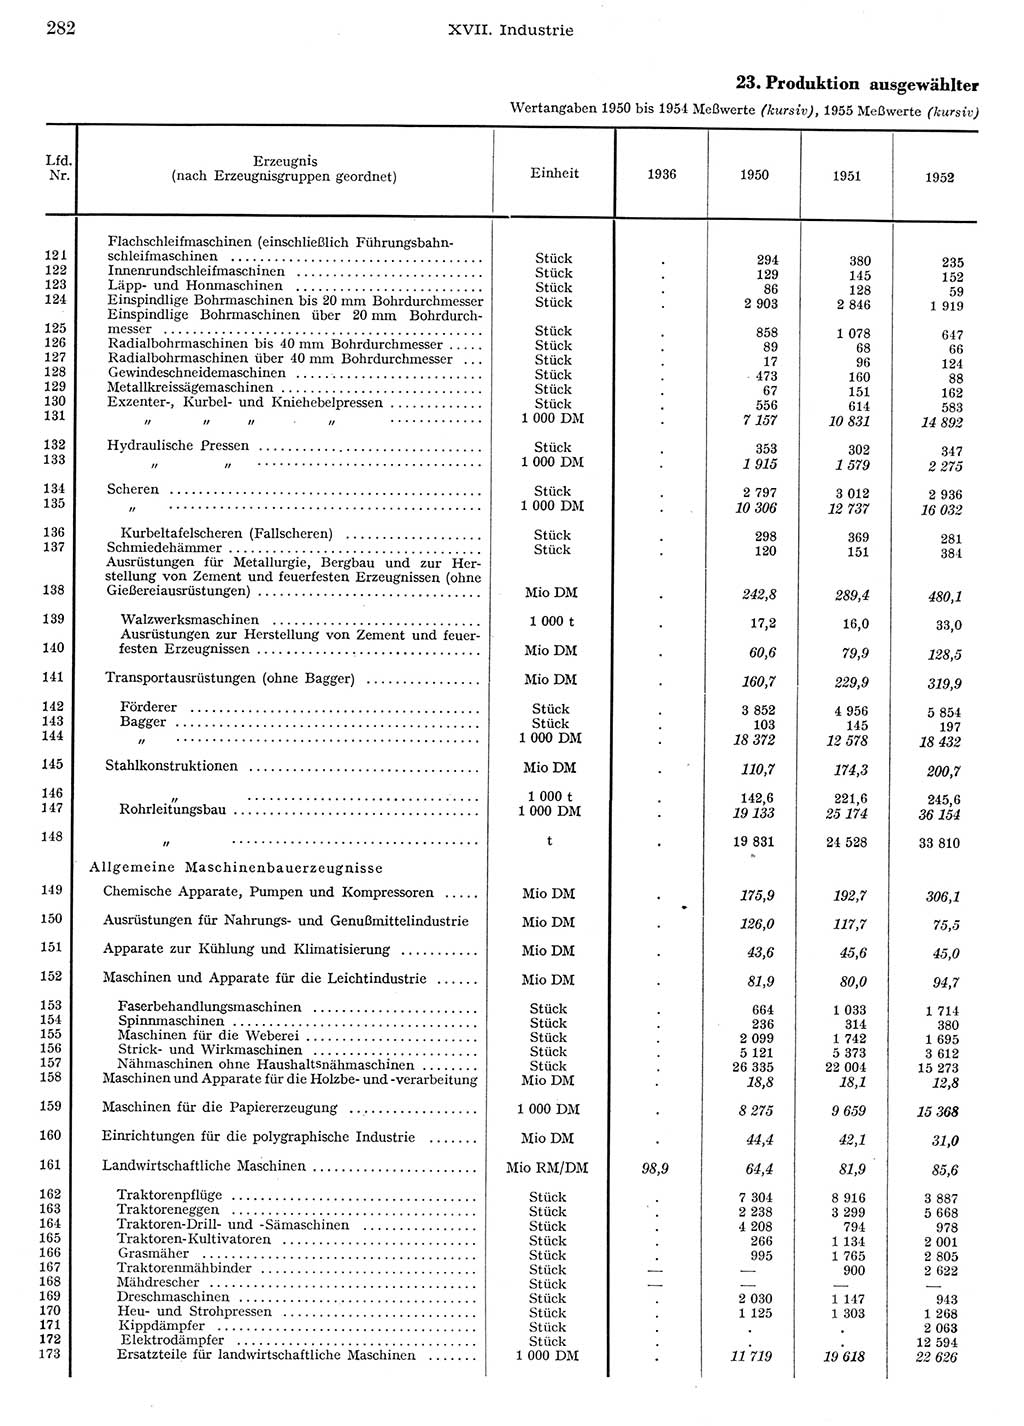 Statistisches Jahrbuch der Deutschen Demokratischen Republik (DDR) 1956, Seite 282 (Stat. Jb. DDR 1956, S. 282)